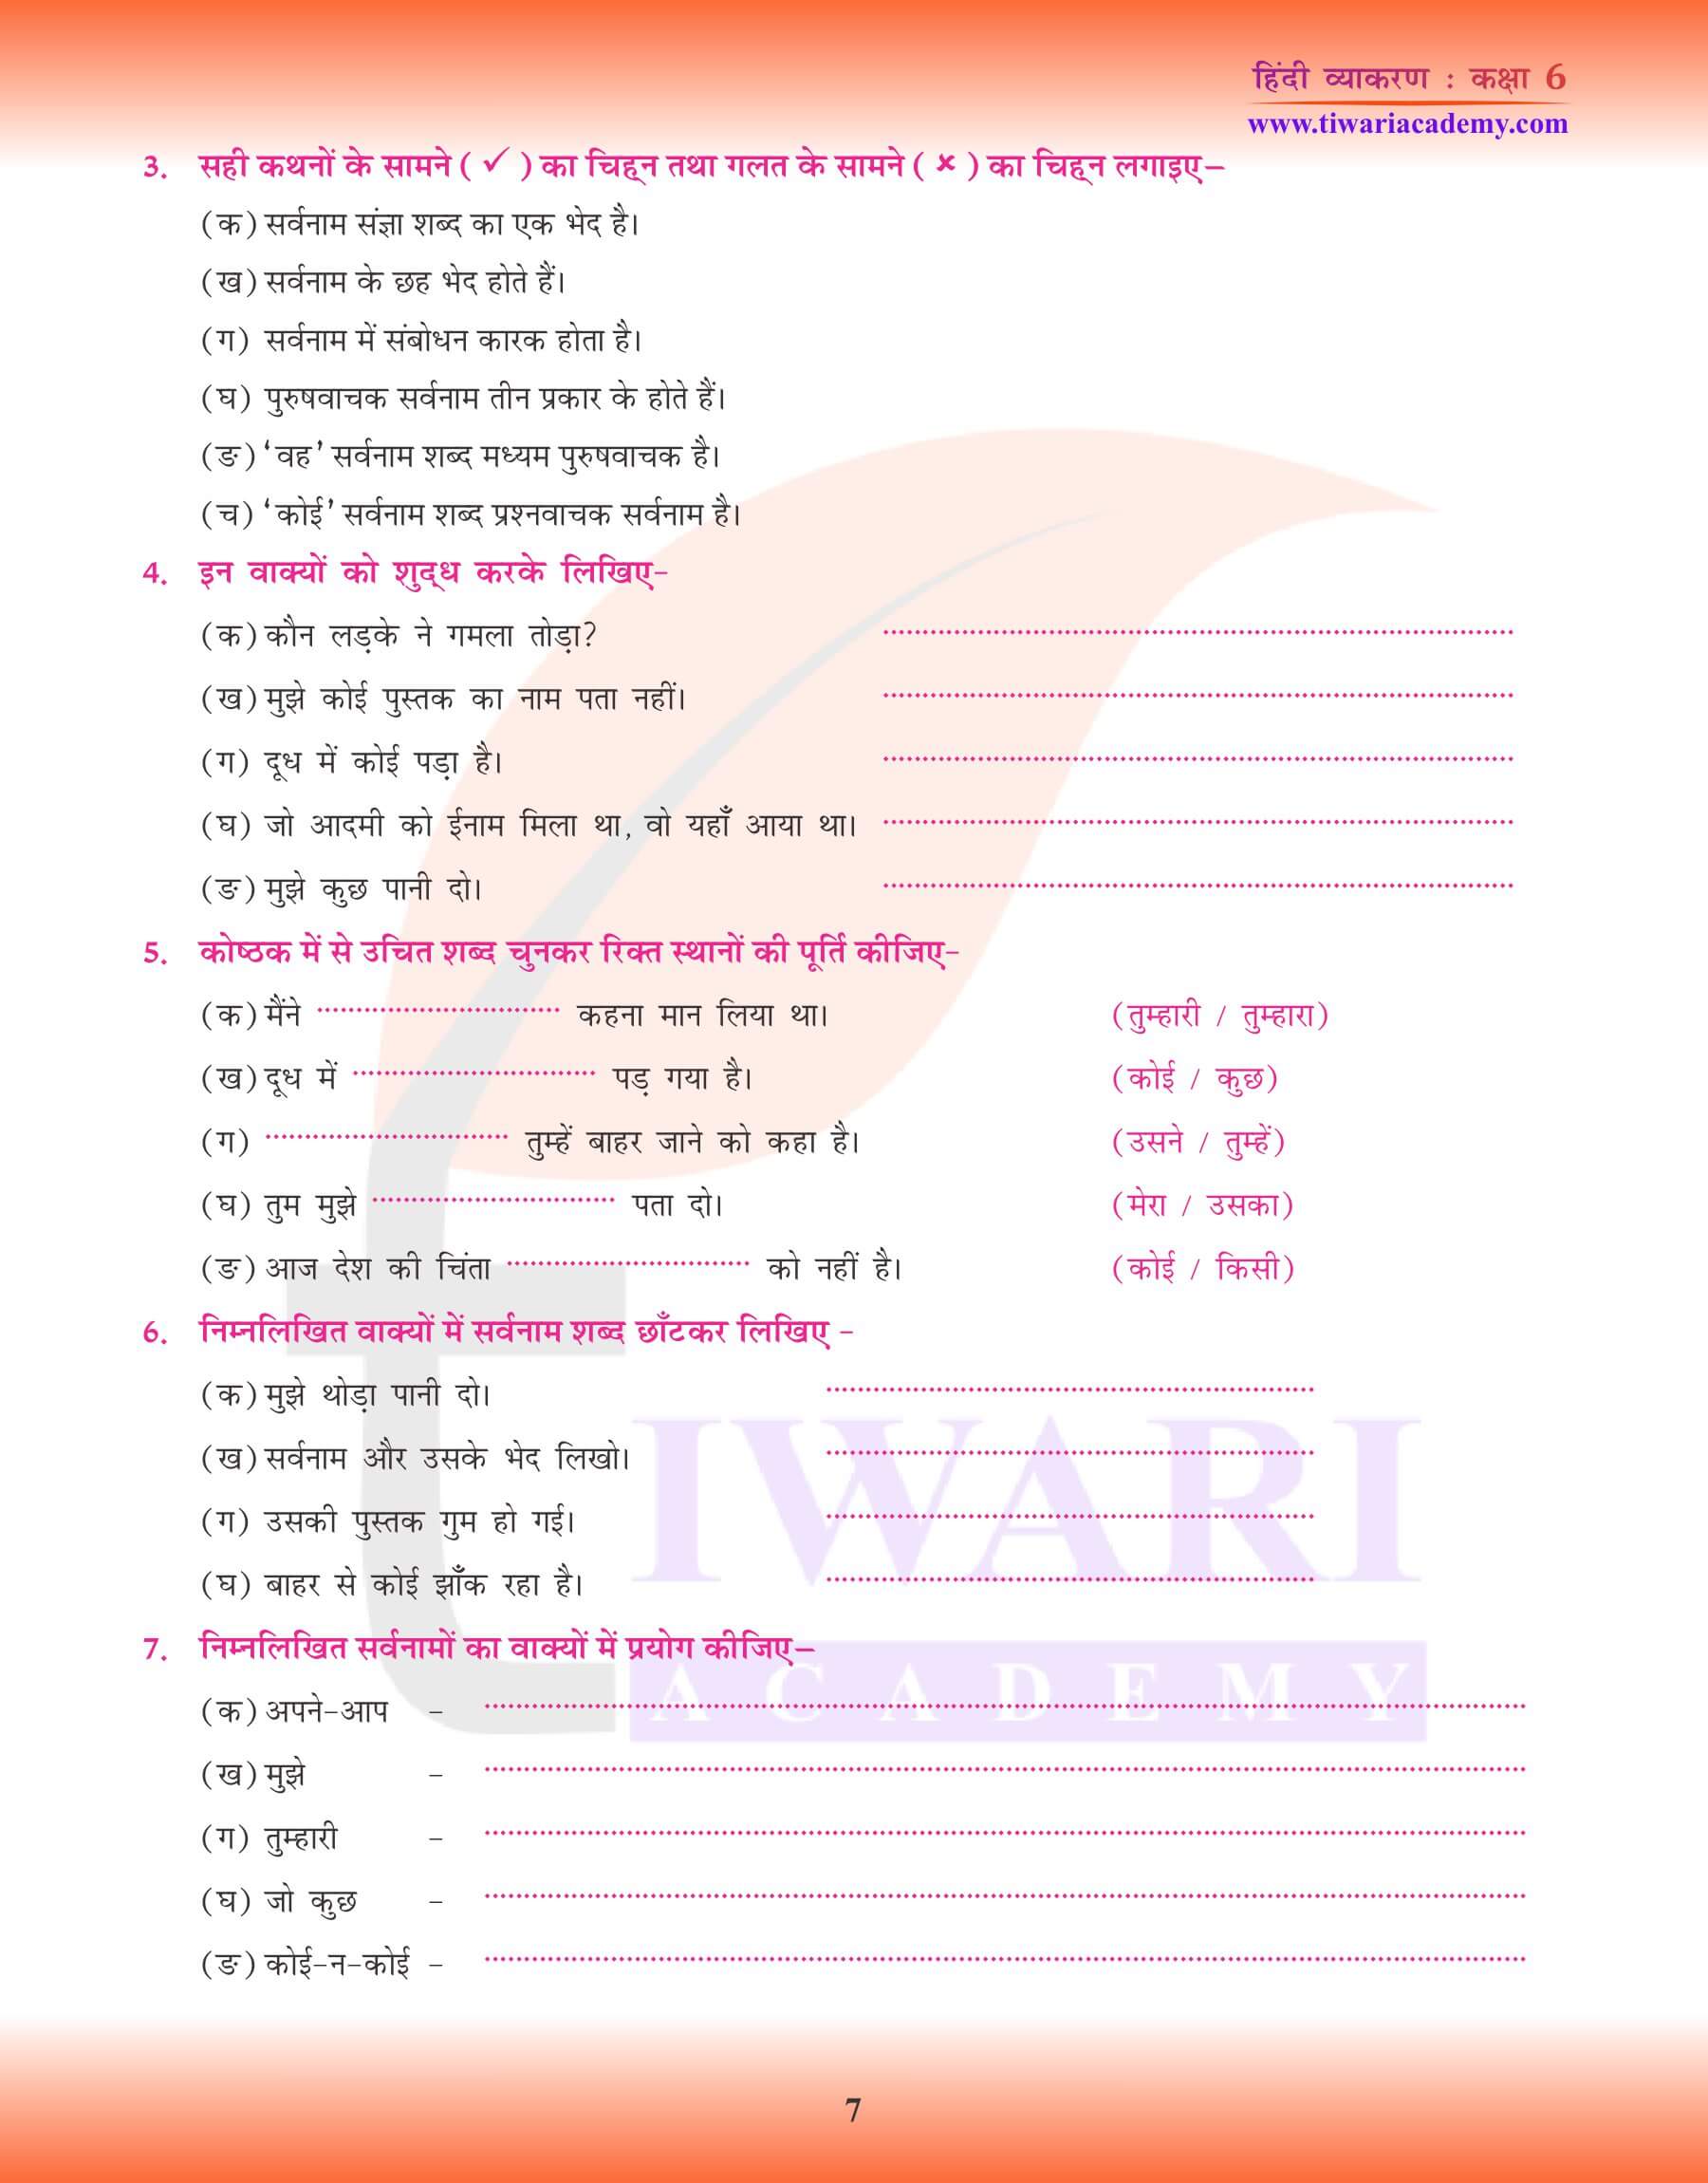 कक्षा 6 हिंदी व्याकरण सर्वनाम की पहचान